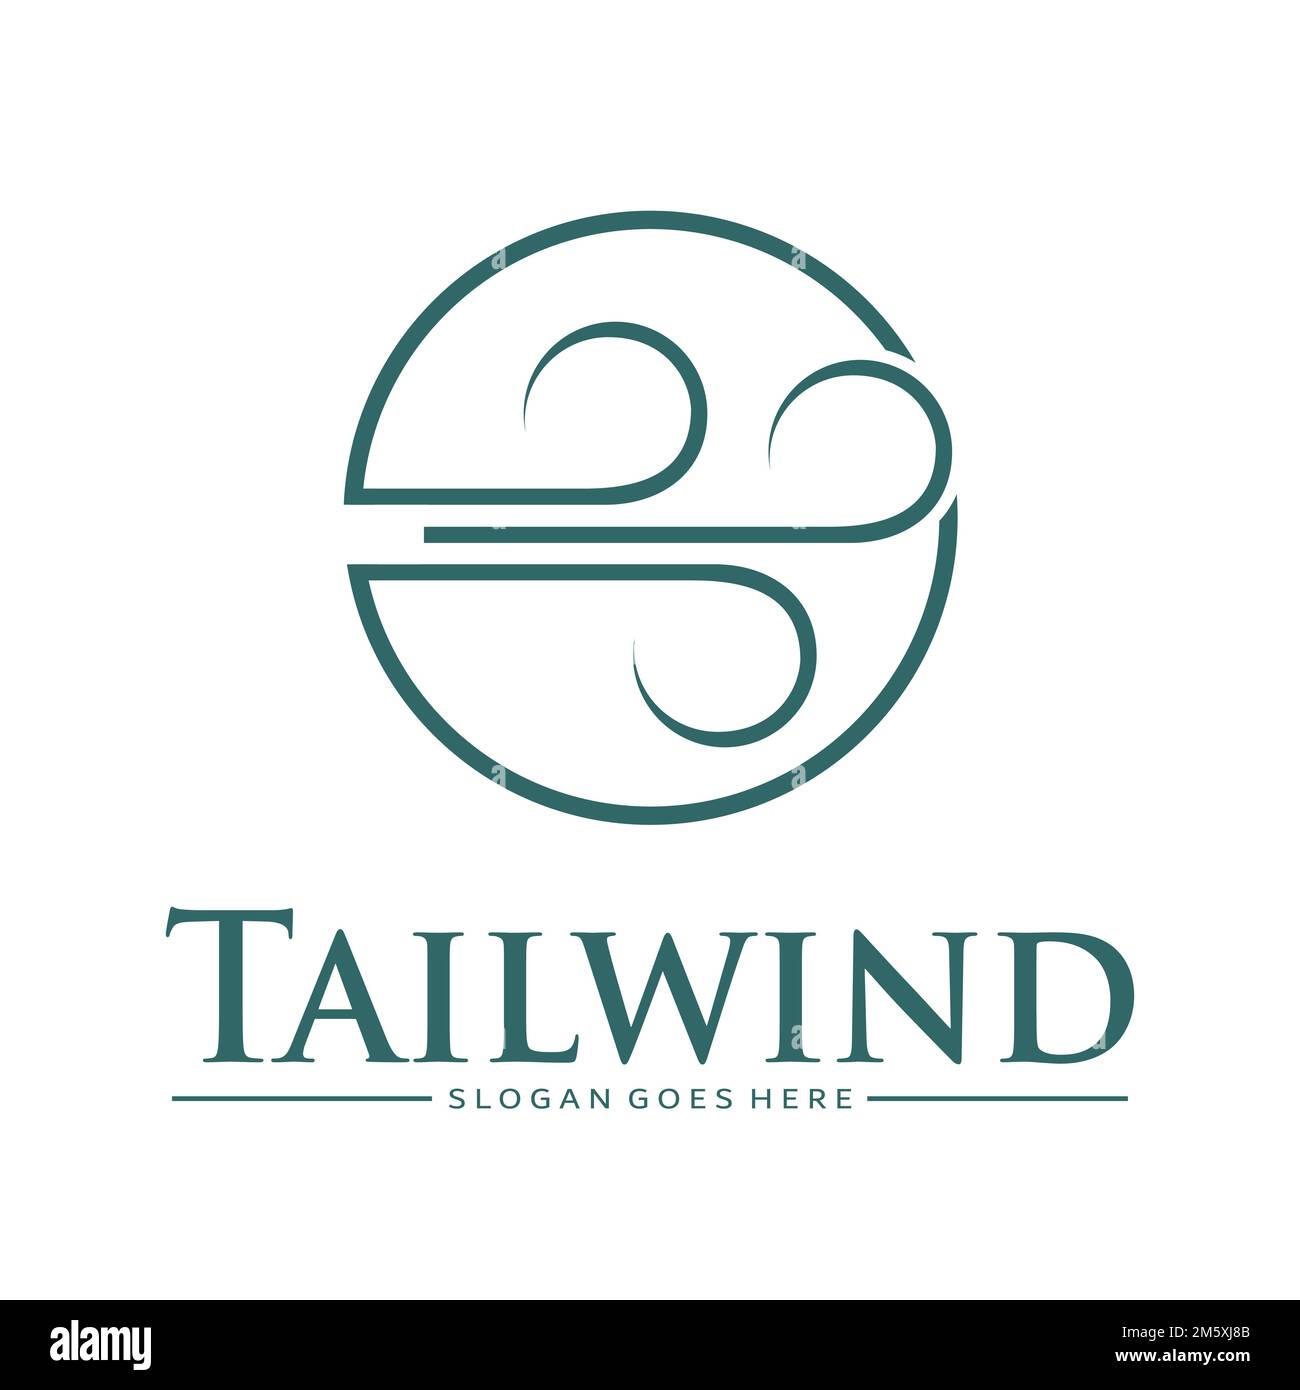 Khám phá khái niệm Tailwind - một công cụ giúp bạn tăng tốc độ phát triển giao diện và tối ưu hóa mã của bạn! Hãy nhấn vào ảnh để xem hướng dẫn sử dụng Tailwind.